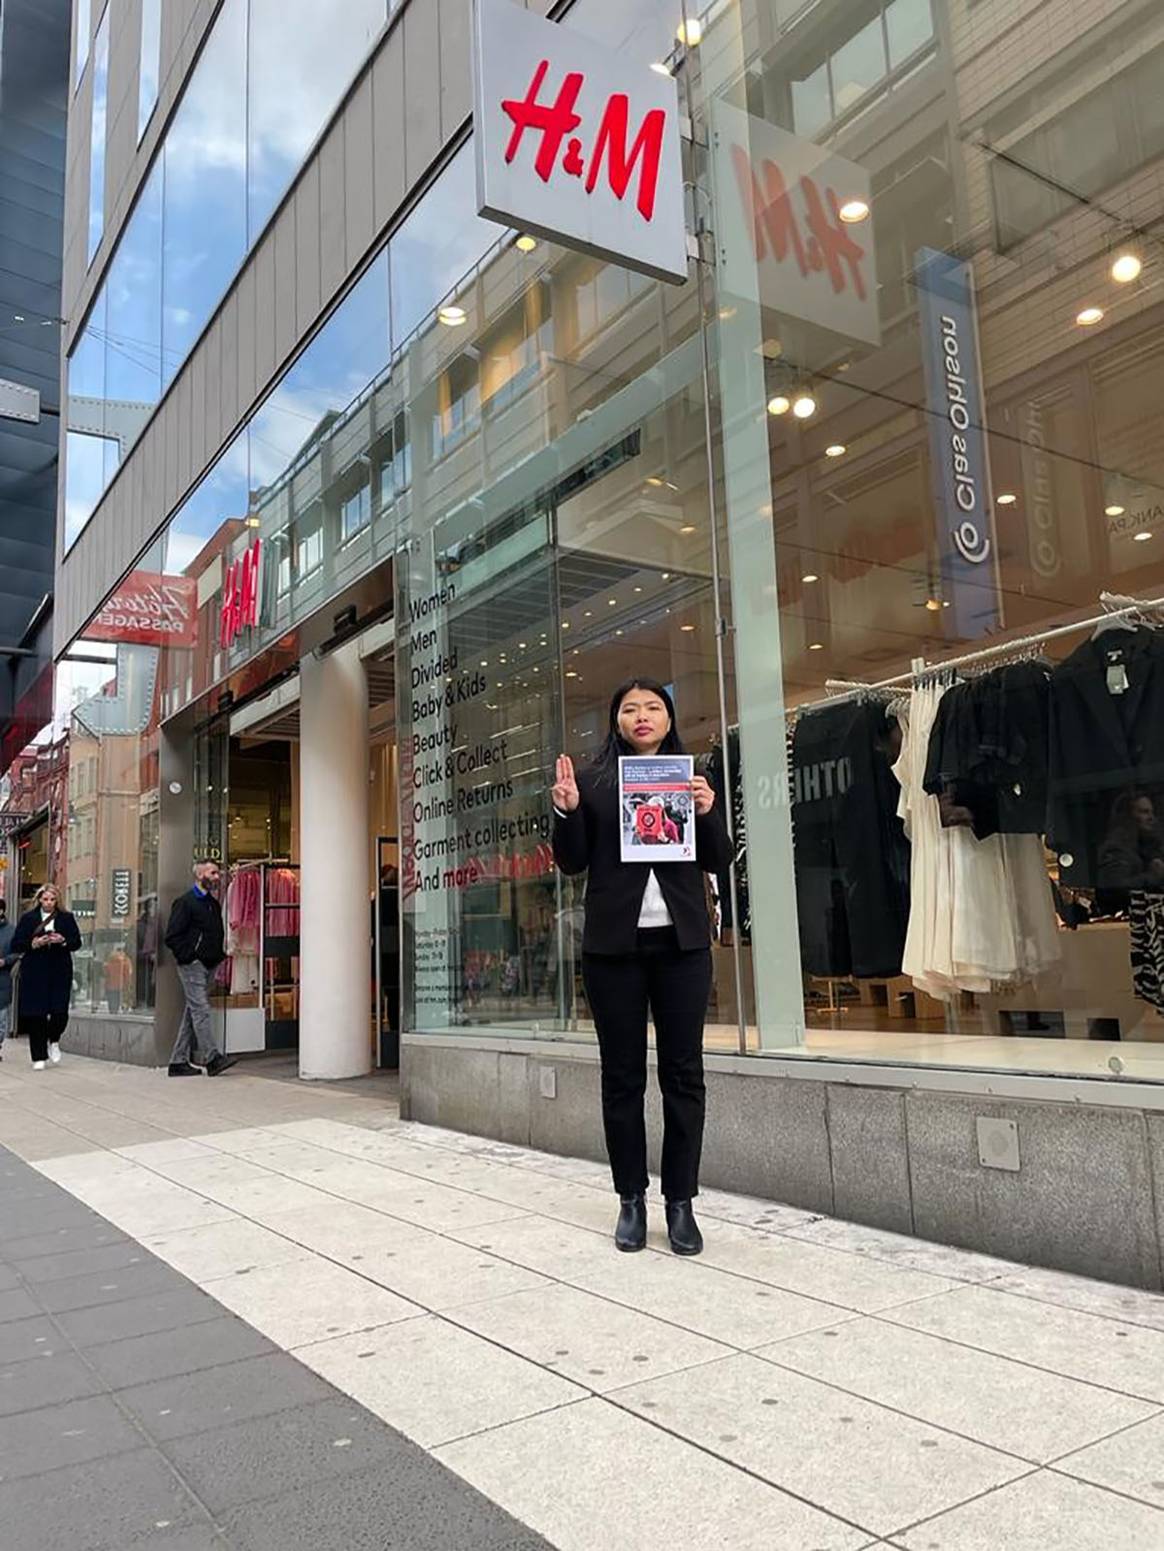 La dirigente sindical birmana Khaing Zar, actualmente en búsqueda de asilo en Alemania, frente a una tienda de H&M en Estocolmo.